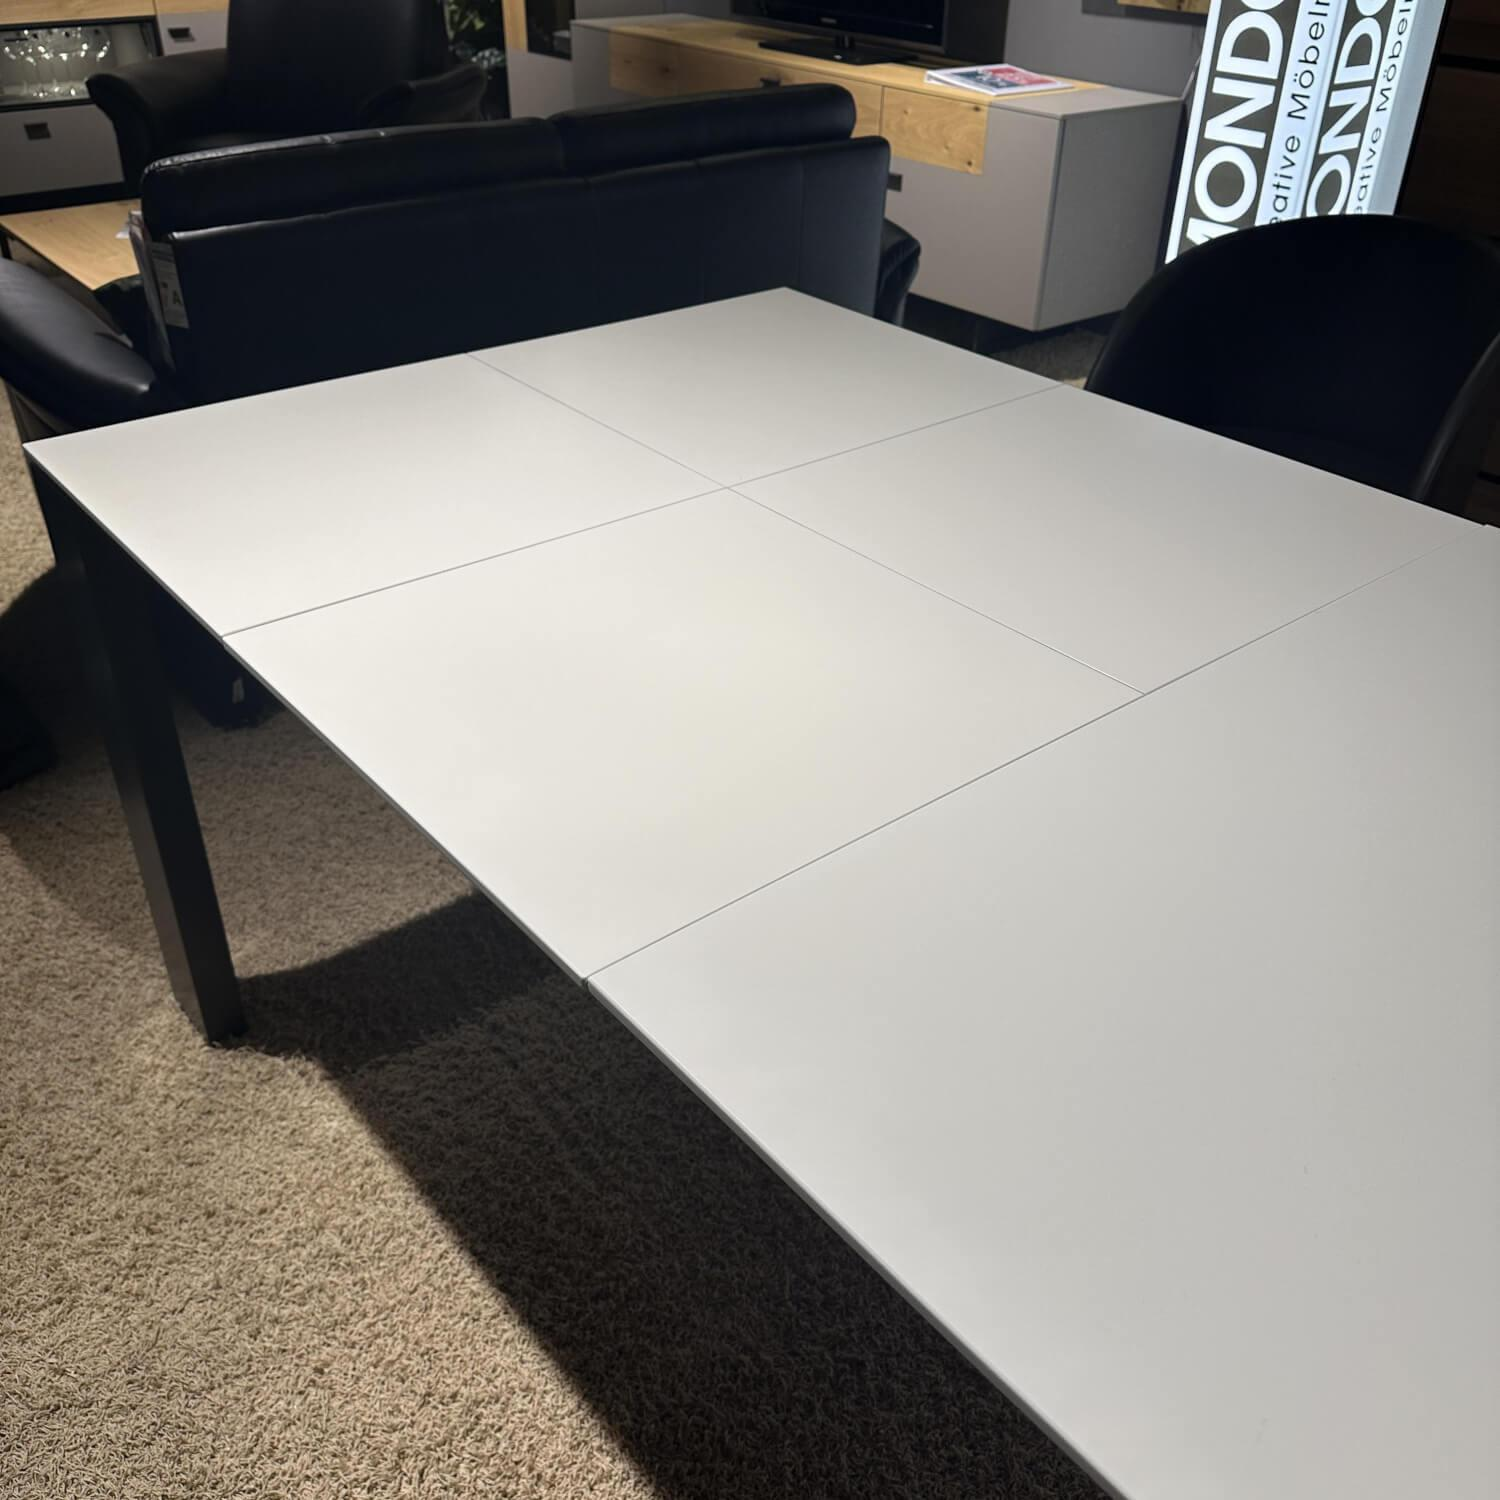 Essgruppe Now! Dining Tisch Mit Auszug Platte Lack Weiß Stühle Bezug Lederoptik Grau